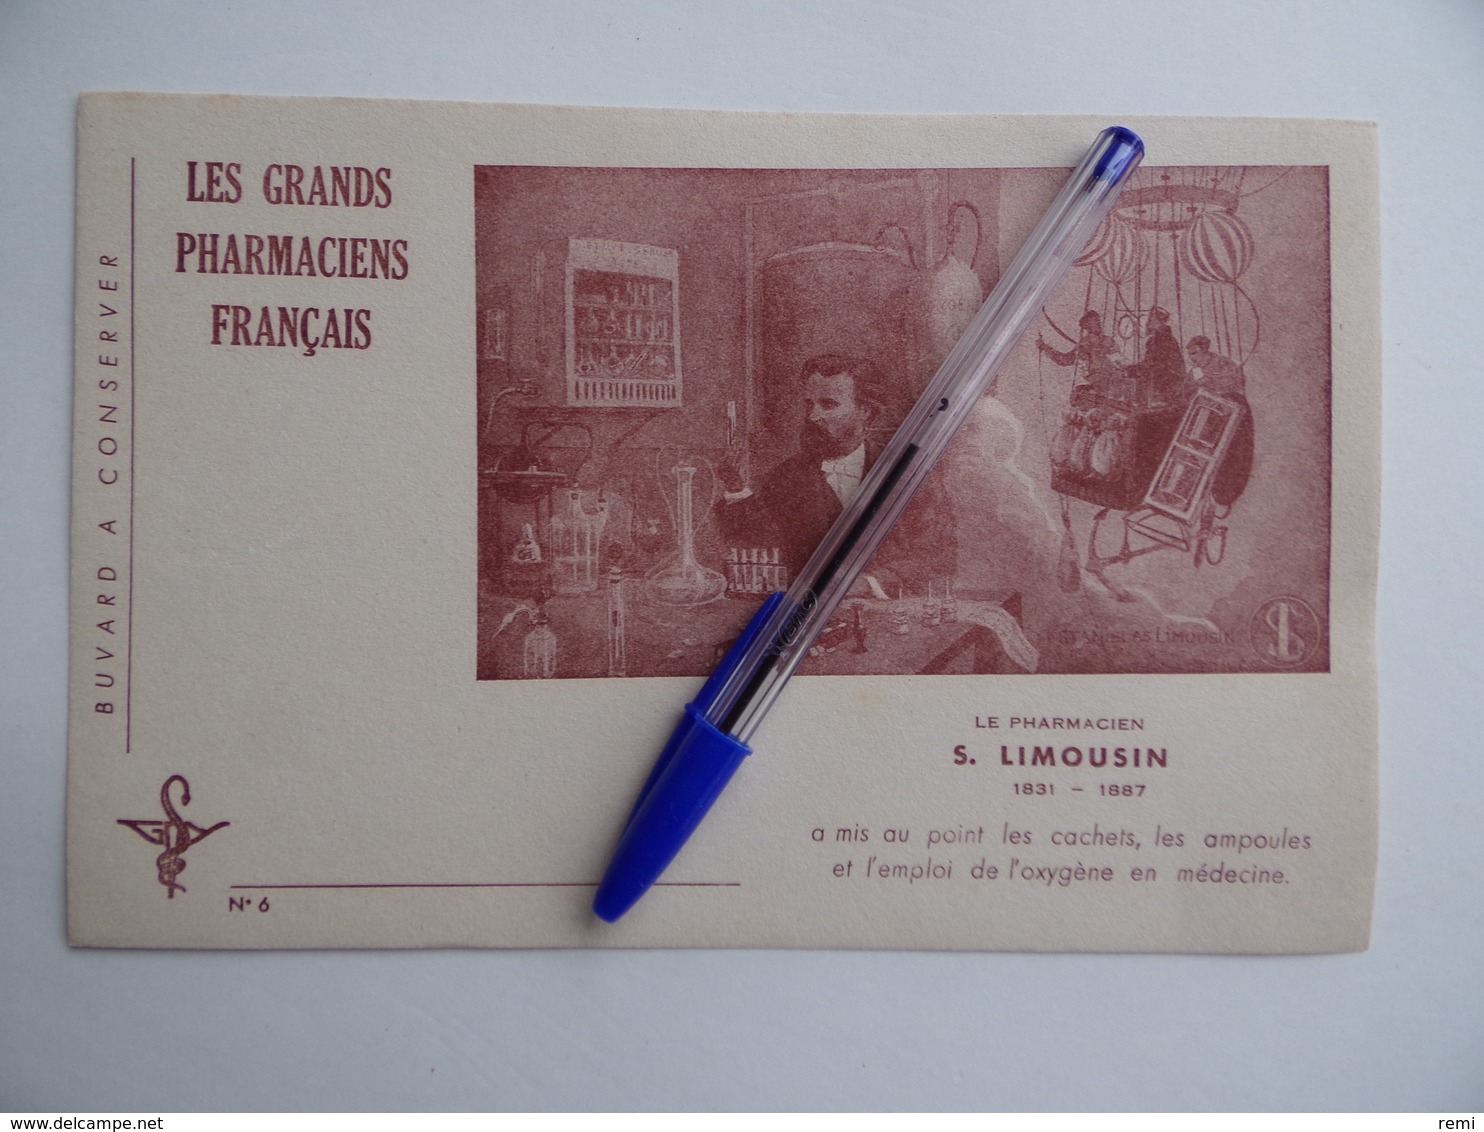 BUVARD Les GRANDS PHARMACIENS FRANCAIS N° 6 S.LIMOUSIN 1831 1887 Pharmacie Pharmacien - Produits Pharmaceutiques